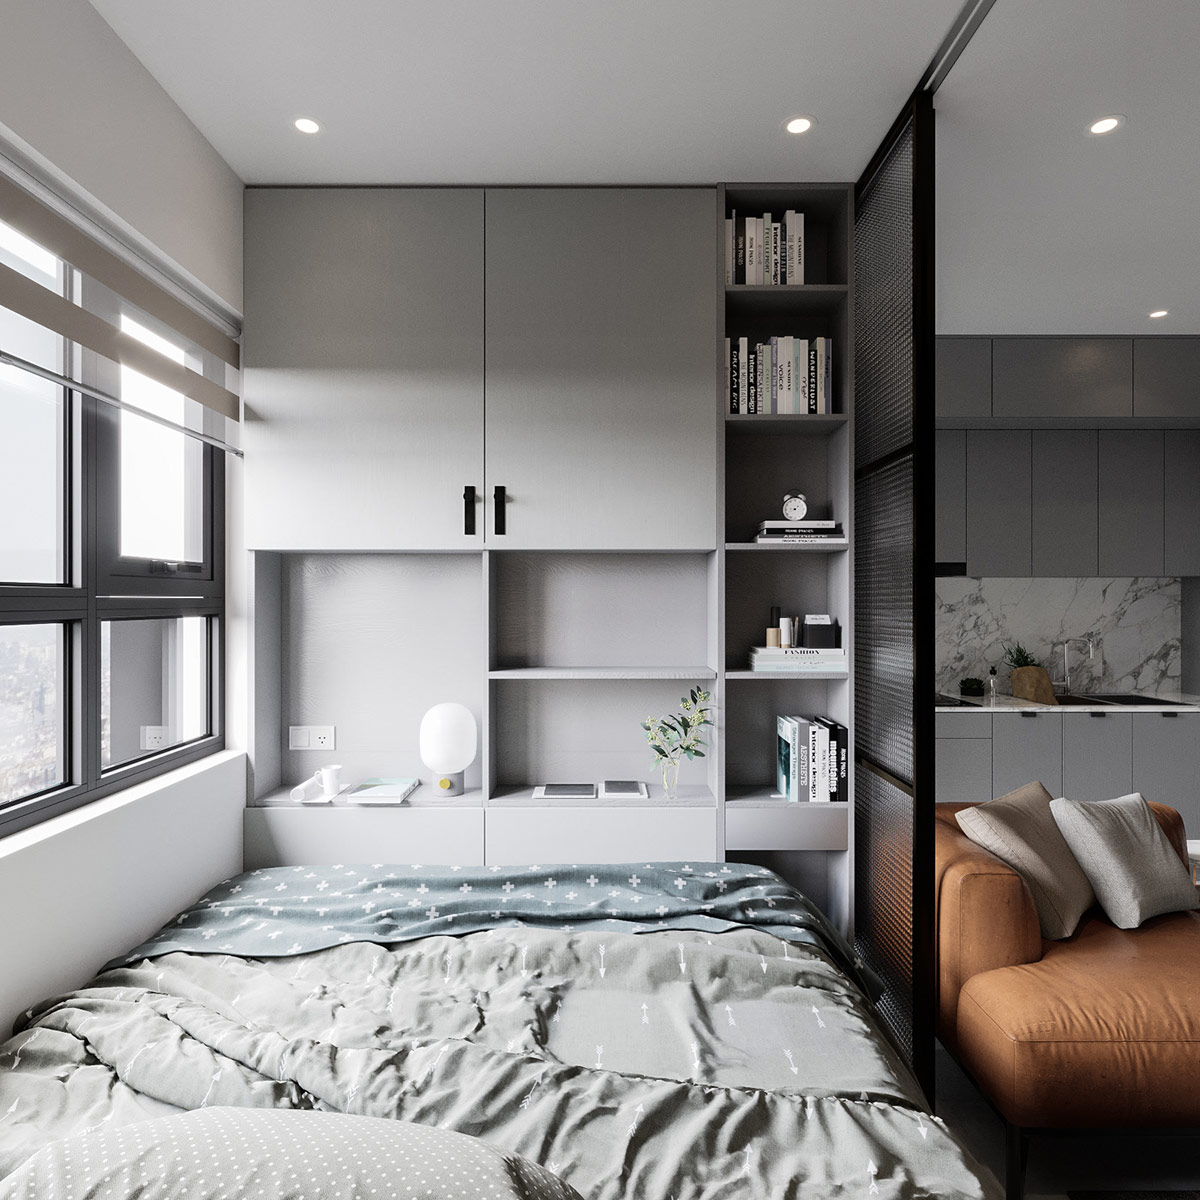 bespoke-bedroom-furniture.jpg (1200×1200)